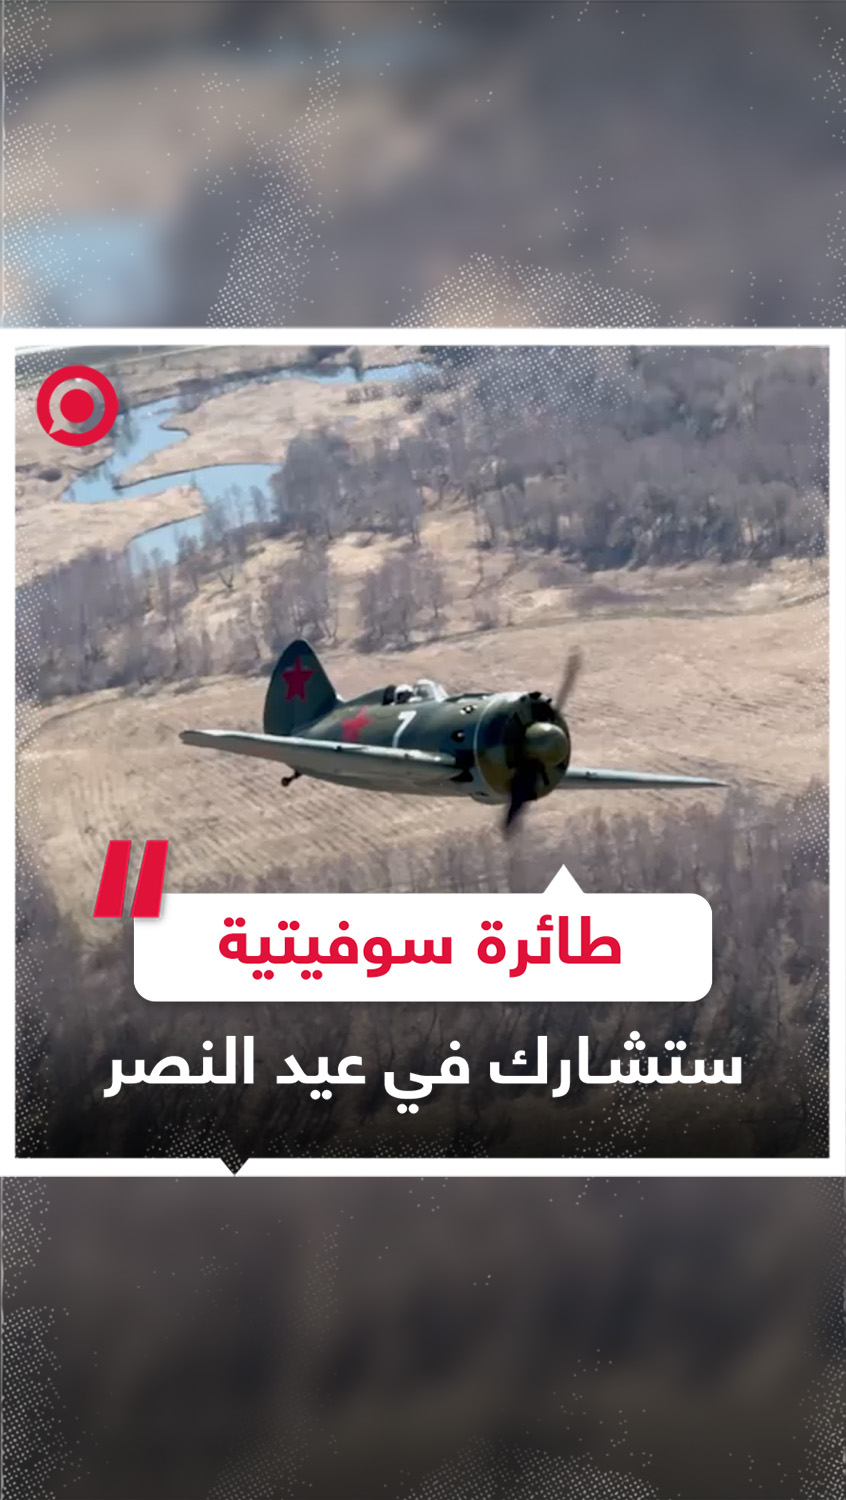 طائرة سوفيتية من الحرب العالمية الثانية تشارك في احتفالات عيد النصر